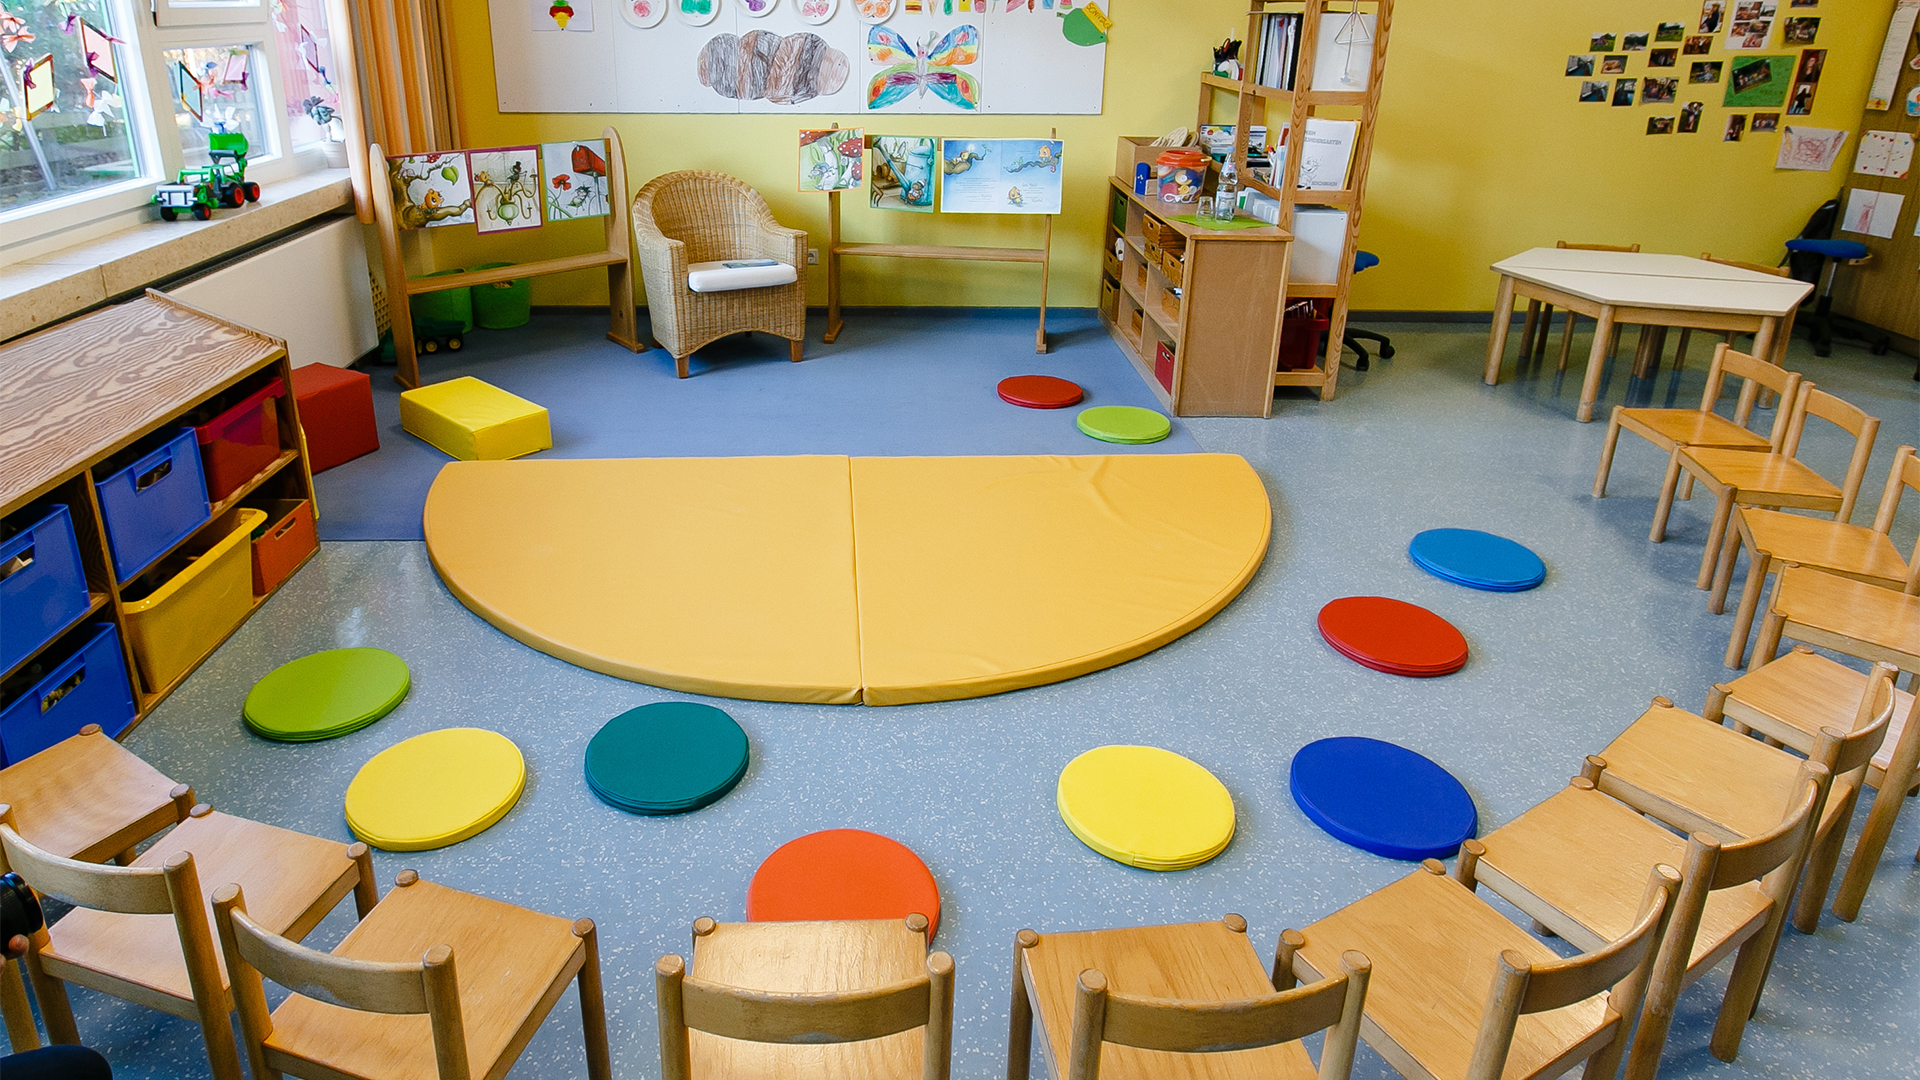 Stühle stehen im Halbkreis im Gruppenraum einer Kindertagesstätte. | picture alliance/dpa